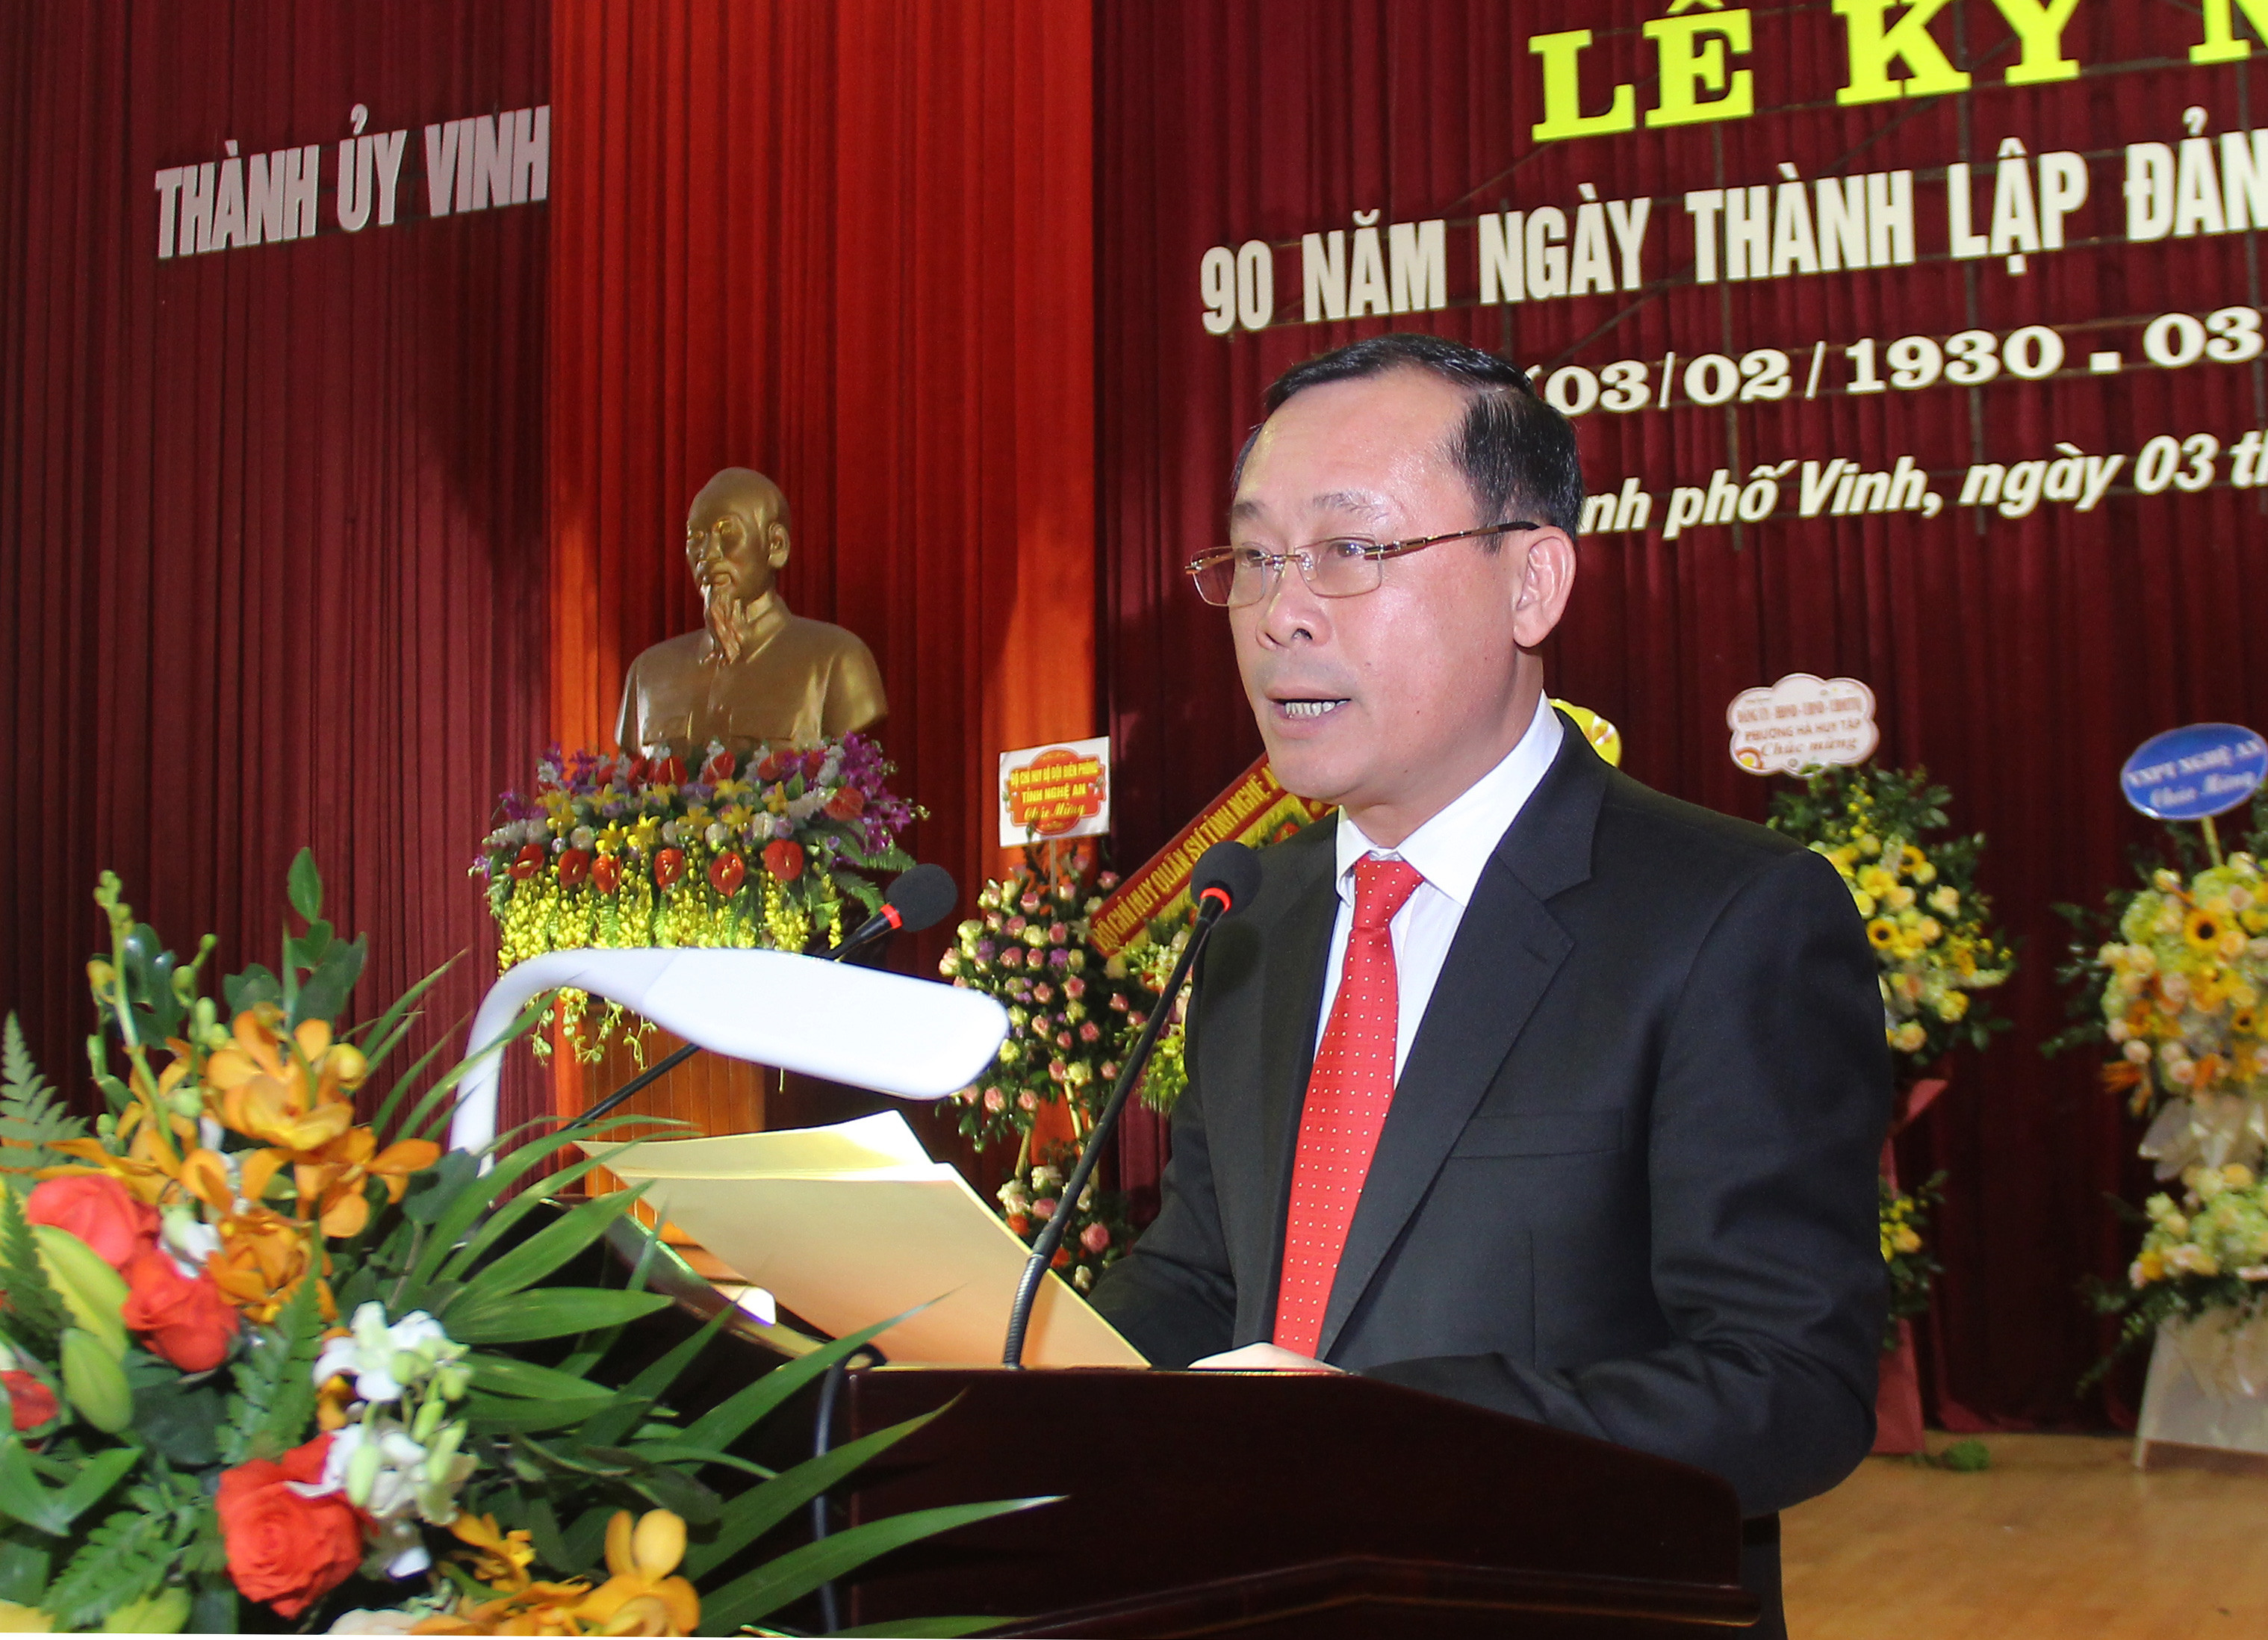 Đồng chí Phan Đức Đồng - Ủy viên Ban Thường vụ Tỉnh ủy, Bí thư Thành ủy đọc diễn văn kỷ niệm 90 năm ngày thành lập Đảng (3/2/1930 - 3/2/2020). Ảnh: Mai Hoa